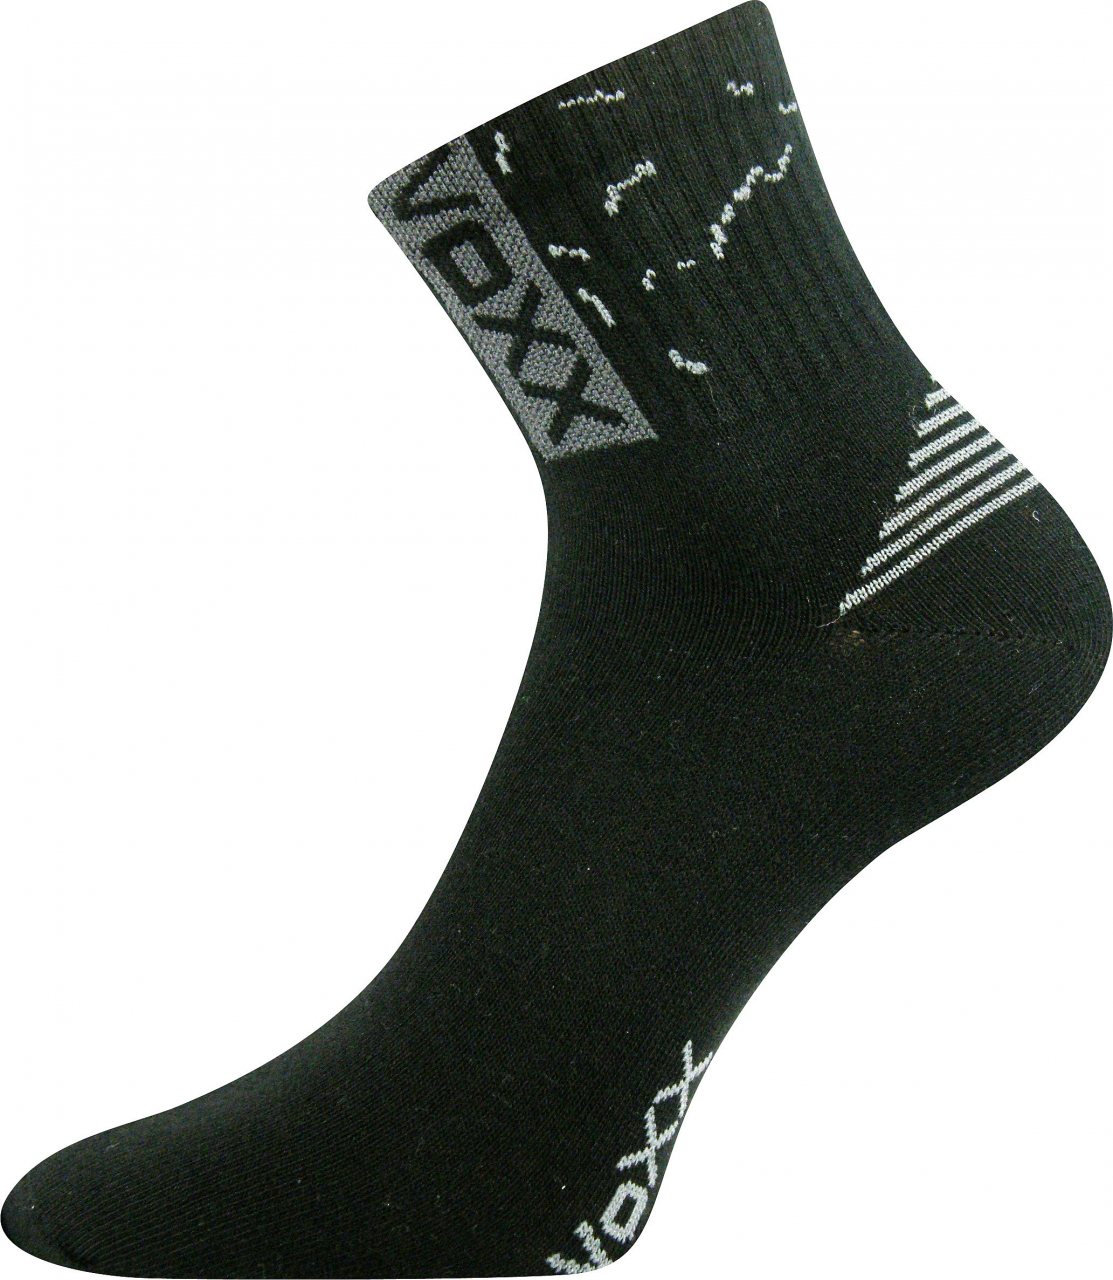 Ponožky sportovní Voxx Codex - černé, 43-46